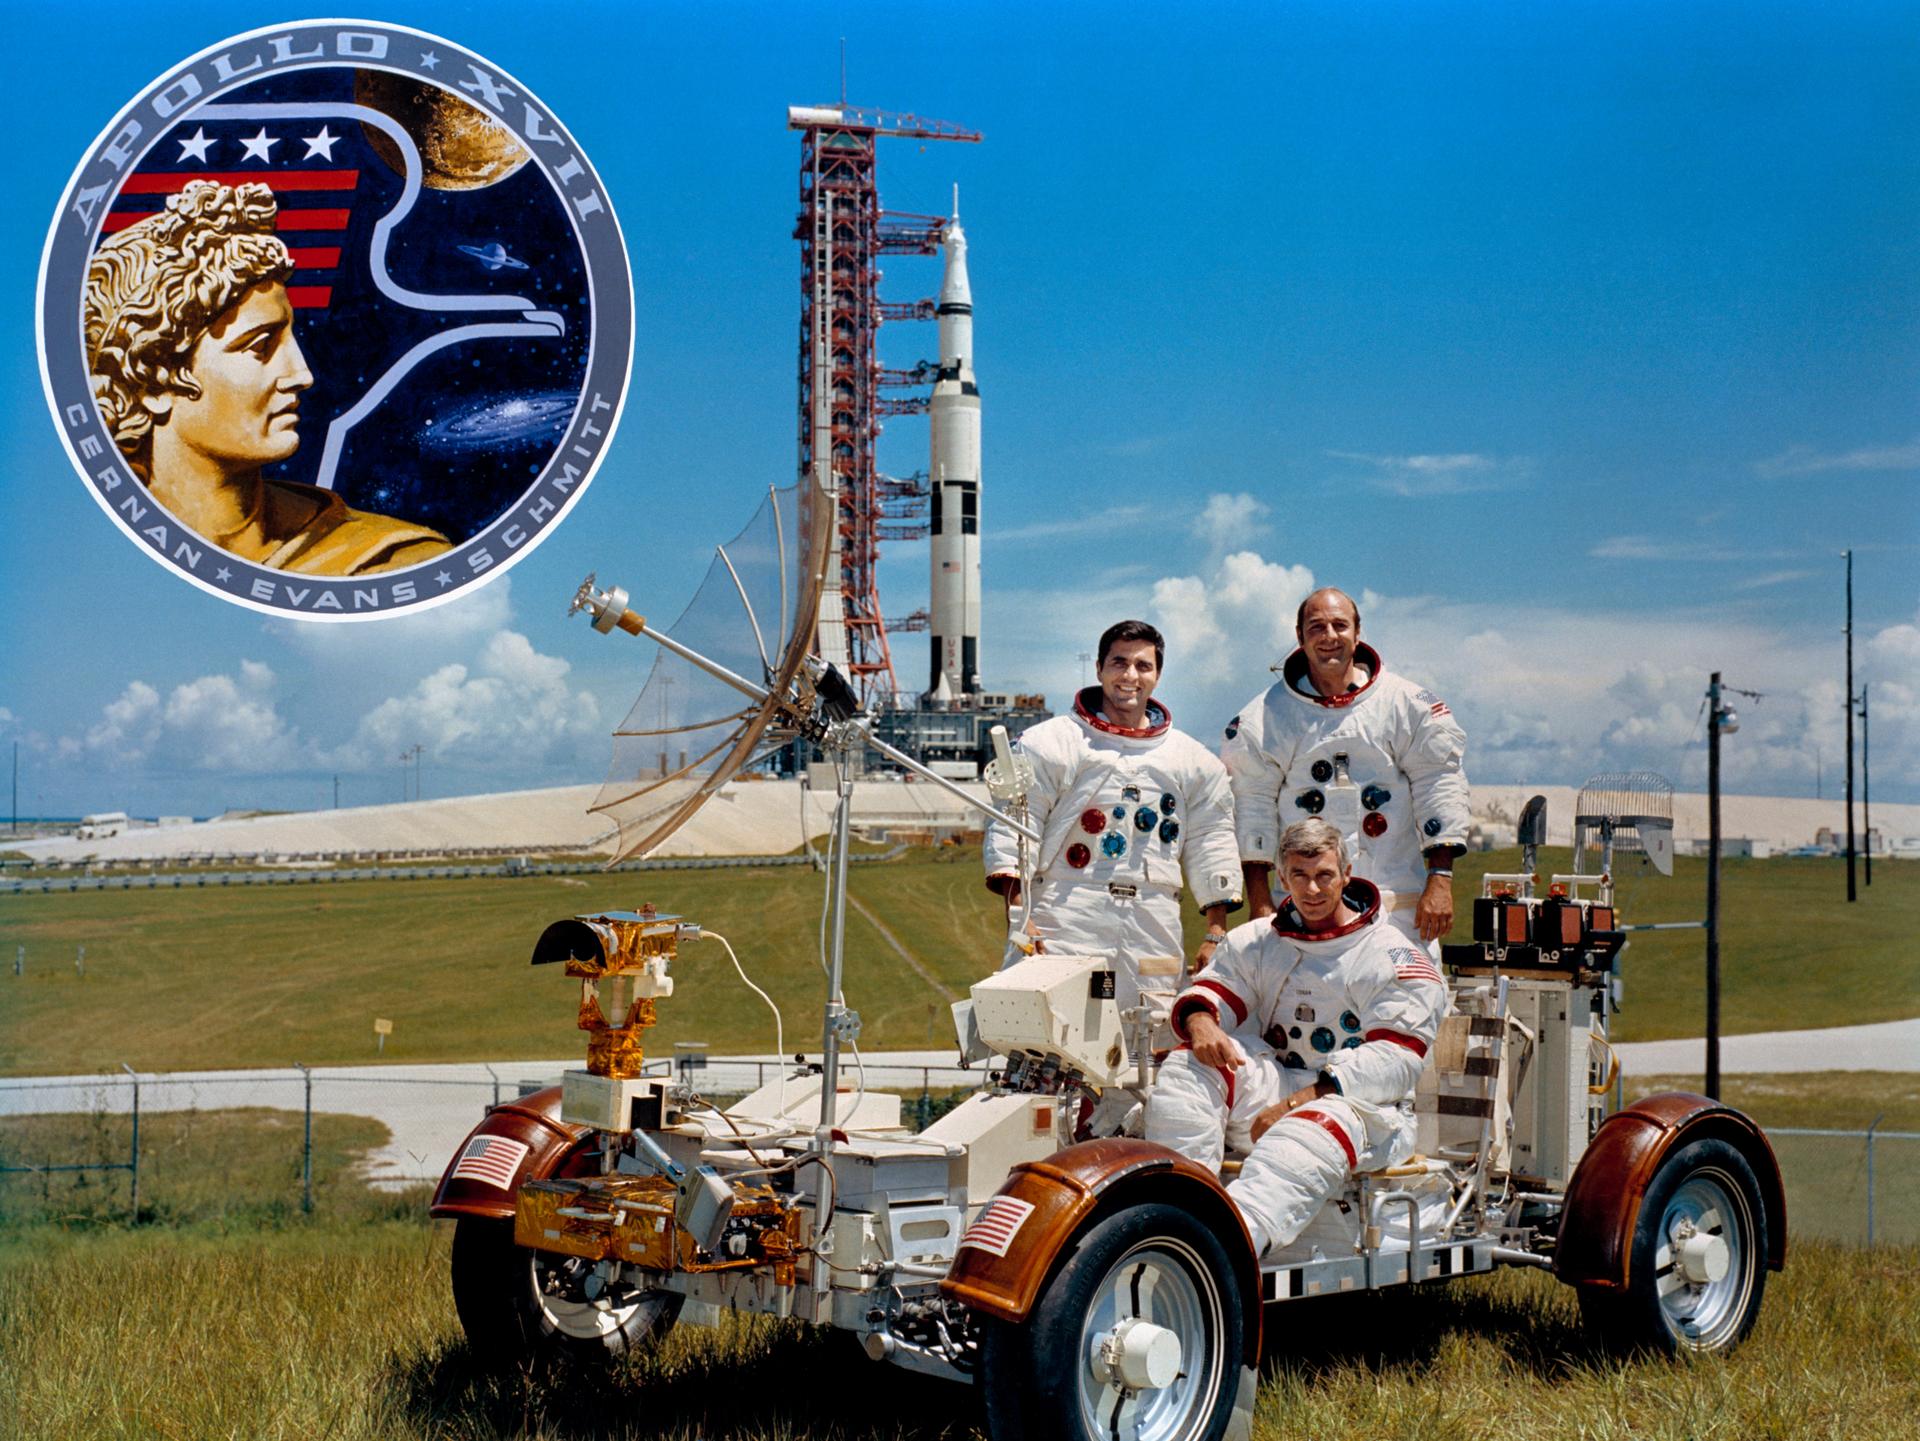 Go to Apollo 17